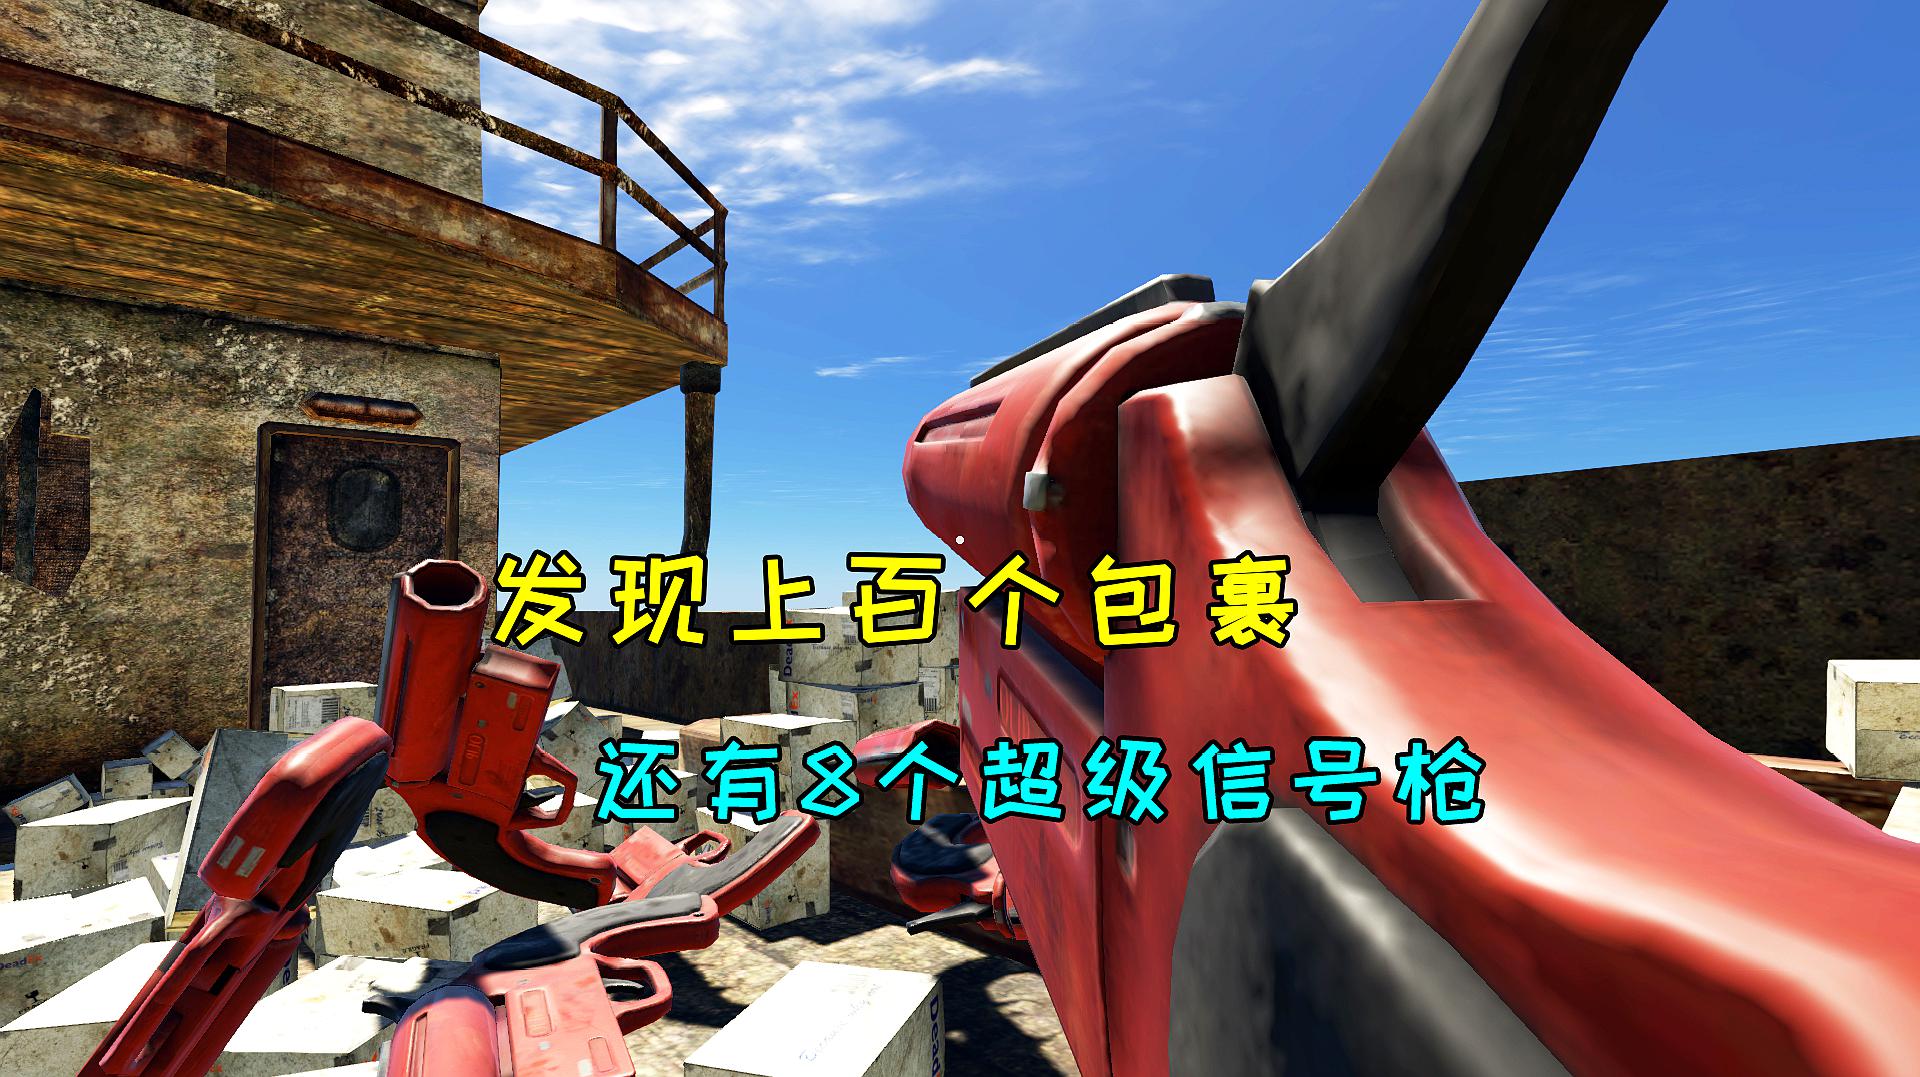 小辉哥游戏解说:生存类游戏《荒岛求生》之m78的视频大全